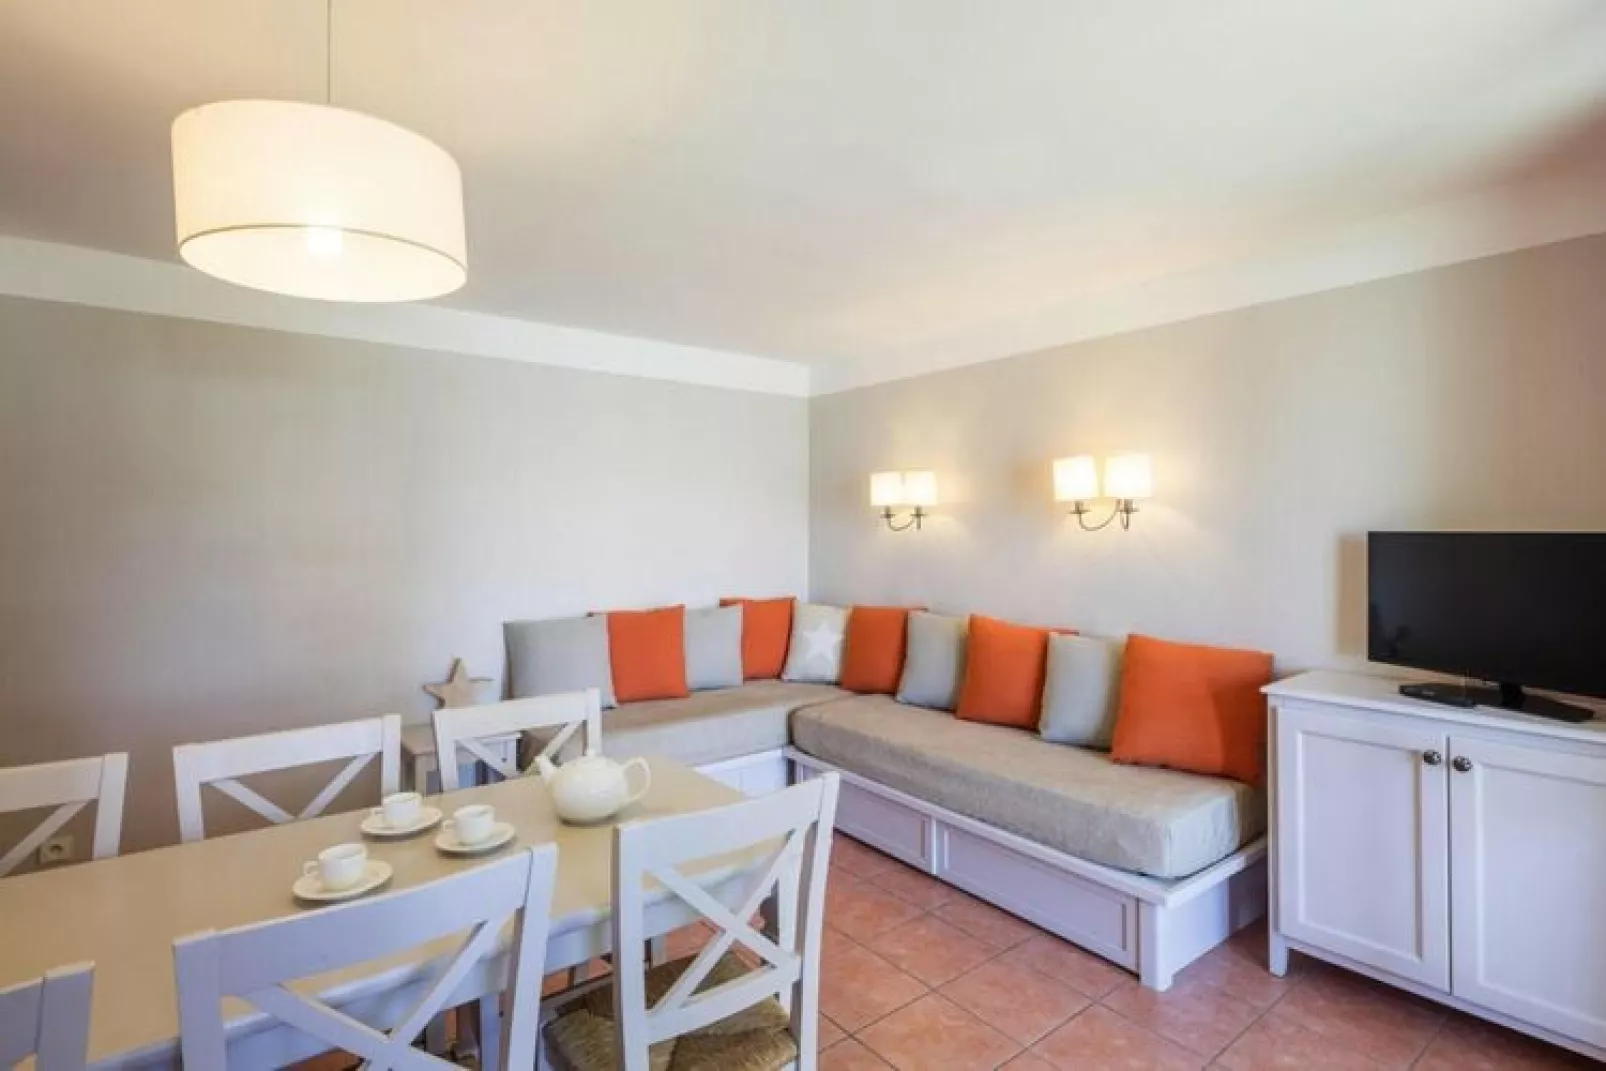 Residence Les Rives de Cannes Mandelieu Mandelieu-la-Napoule - 25 Standard - Apt 5 p - 1 bedroom